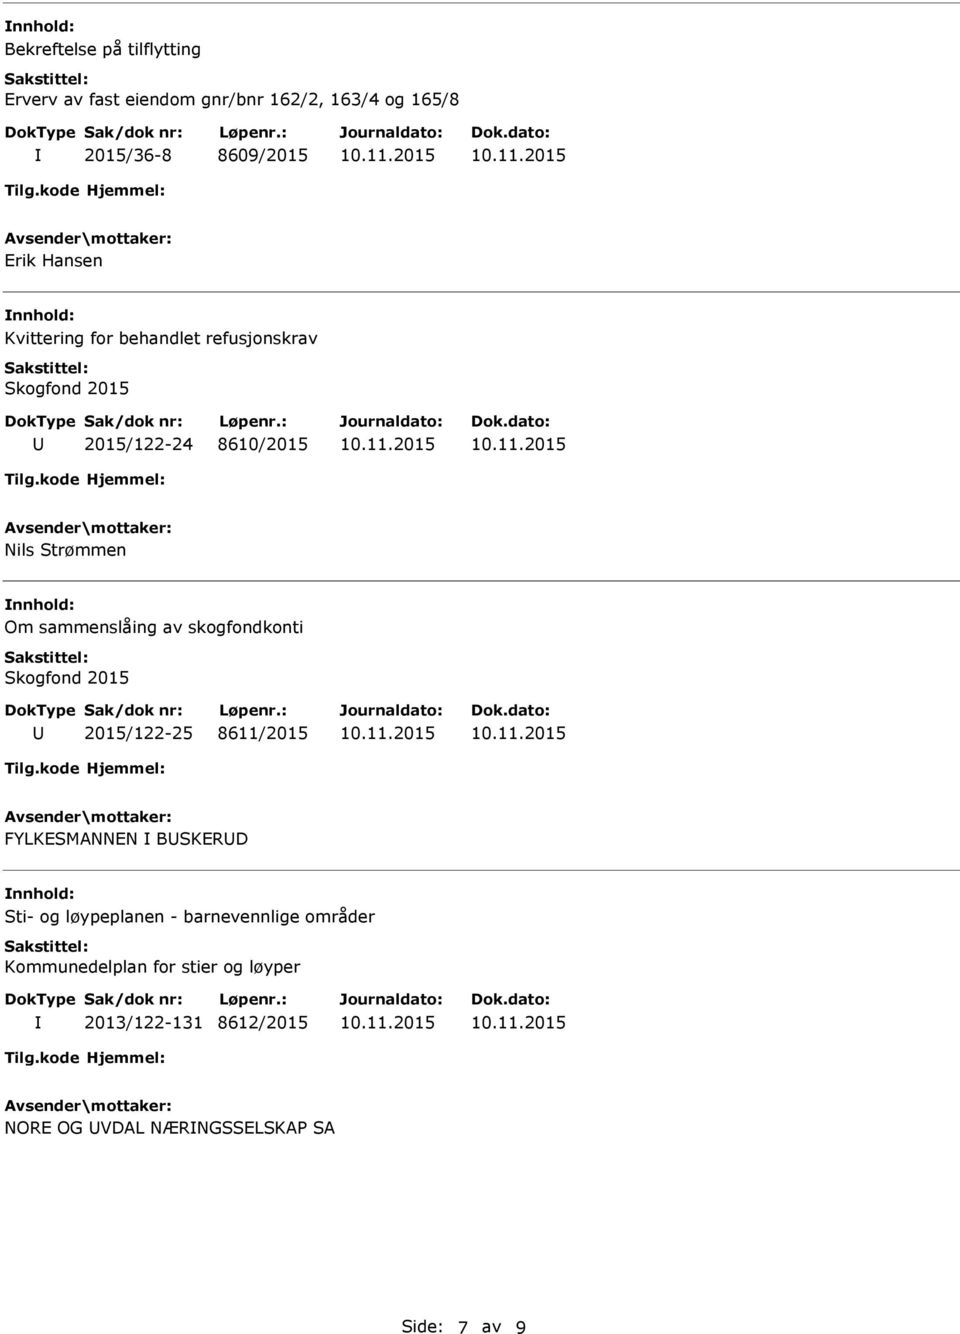 sammenslåing av skogfondkonti Skogfond 2015 2015/122-25 8611/2015 FYLKESMANNEN BSKERD Sti- og løypeplanen -